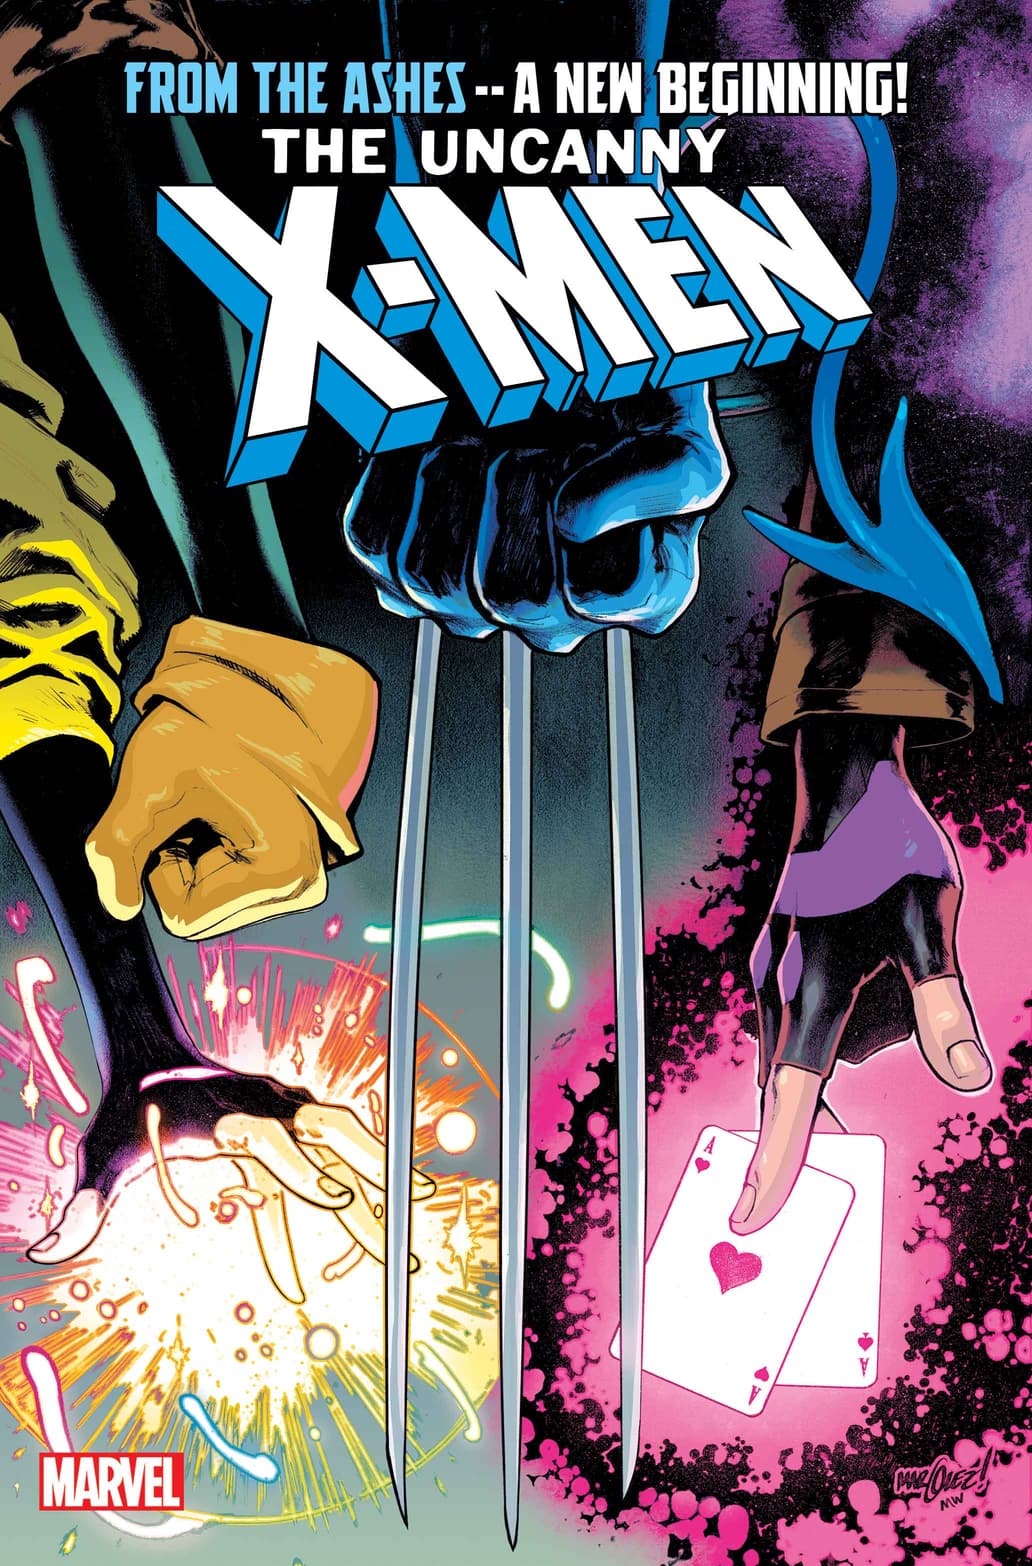 Vampira vai carregar o sonho de Xavier em nova era dos X-Men